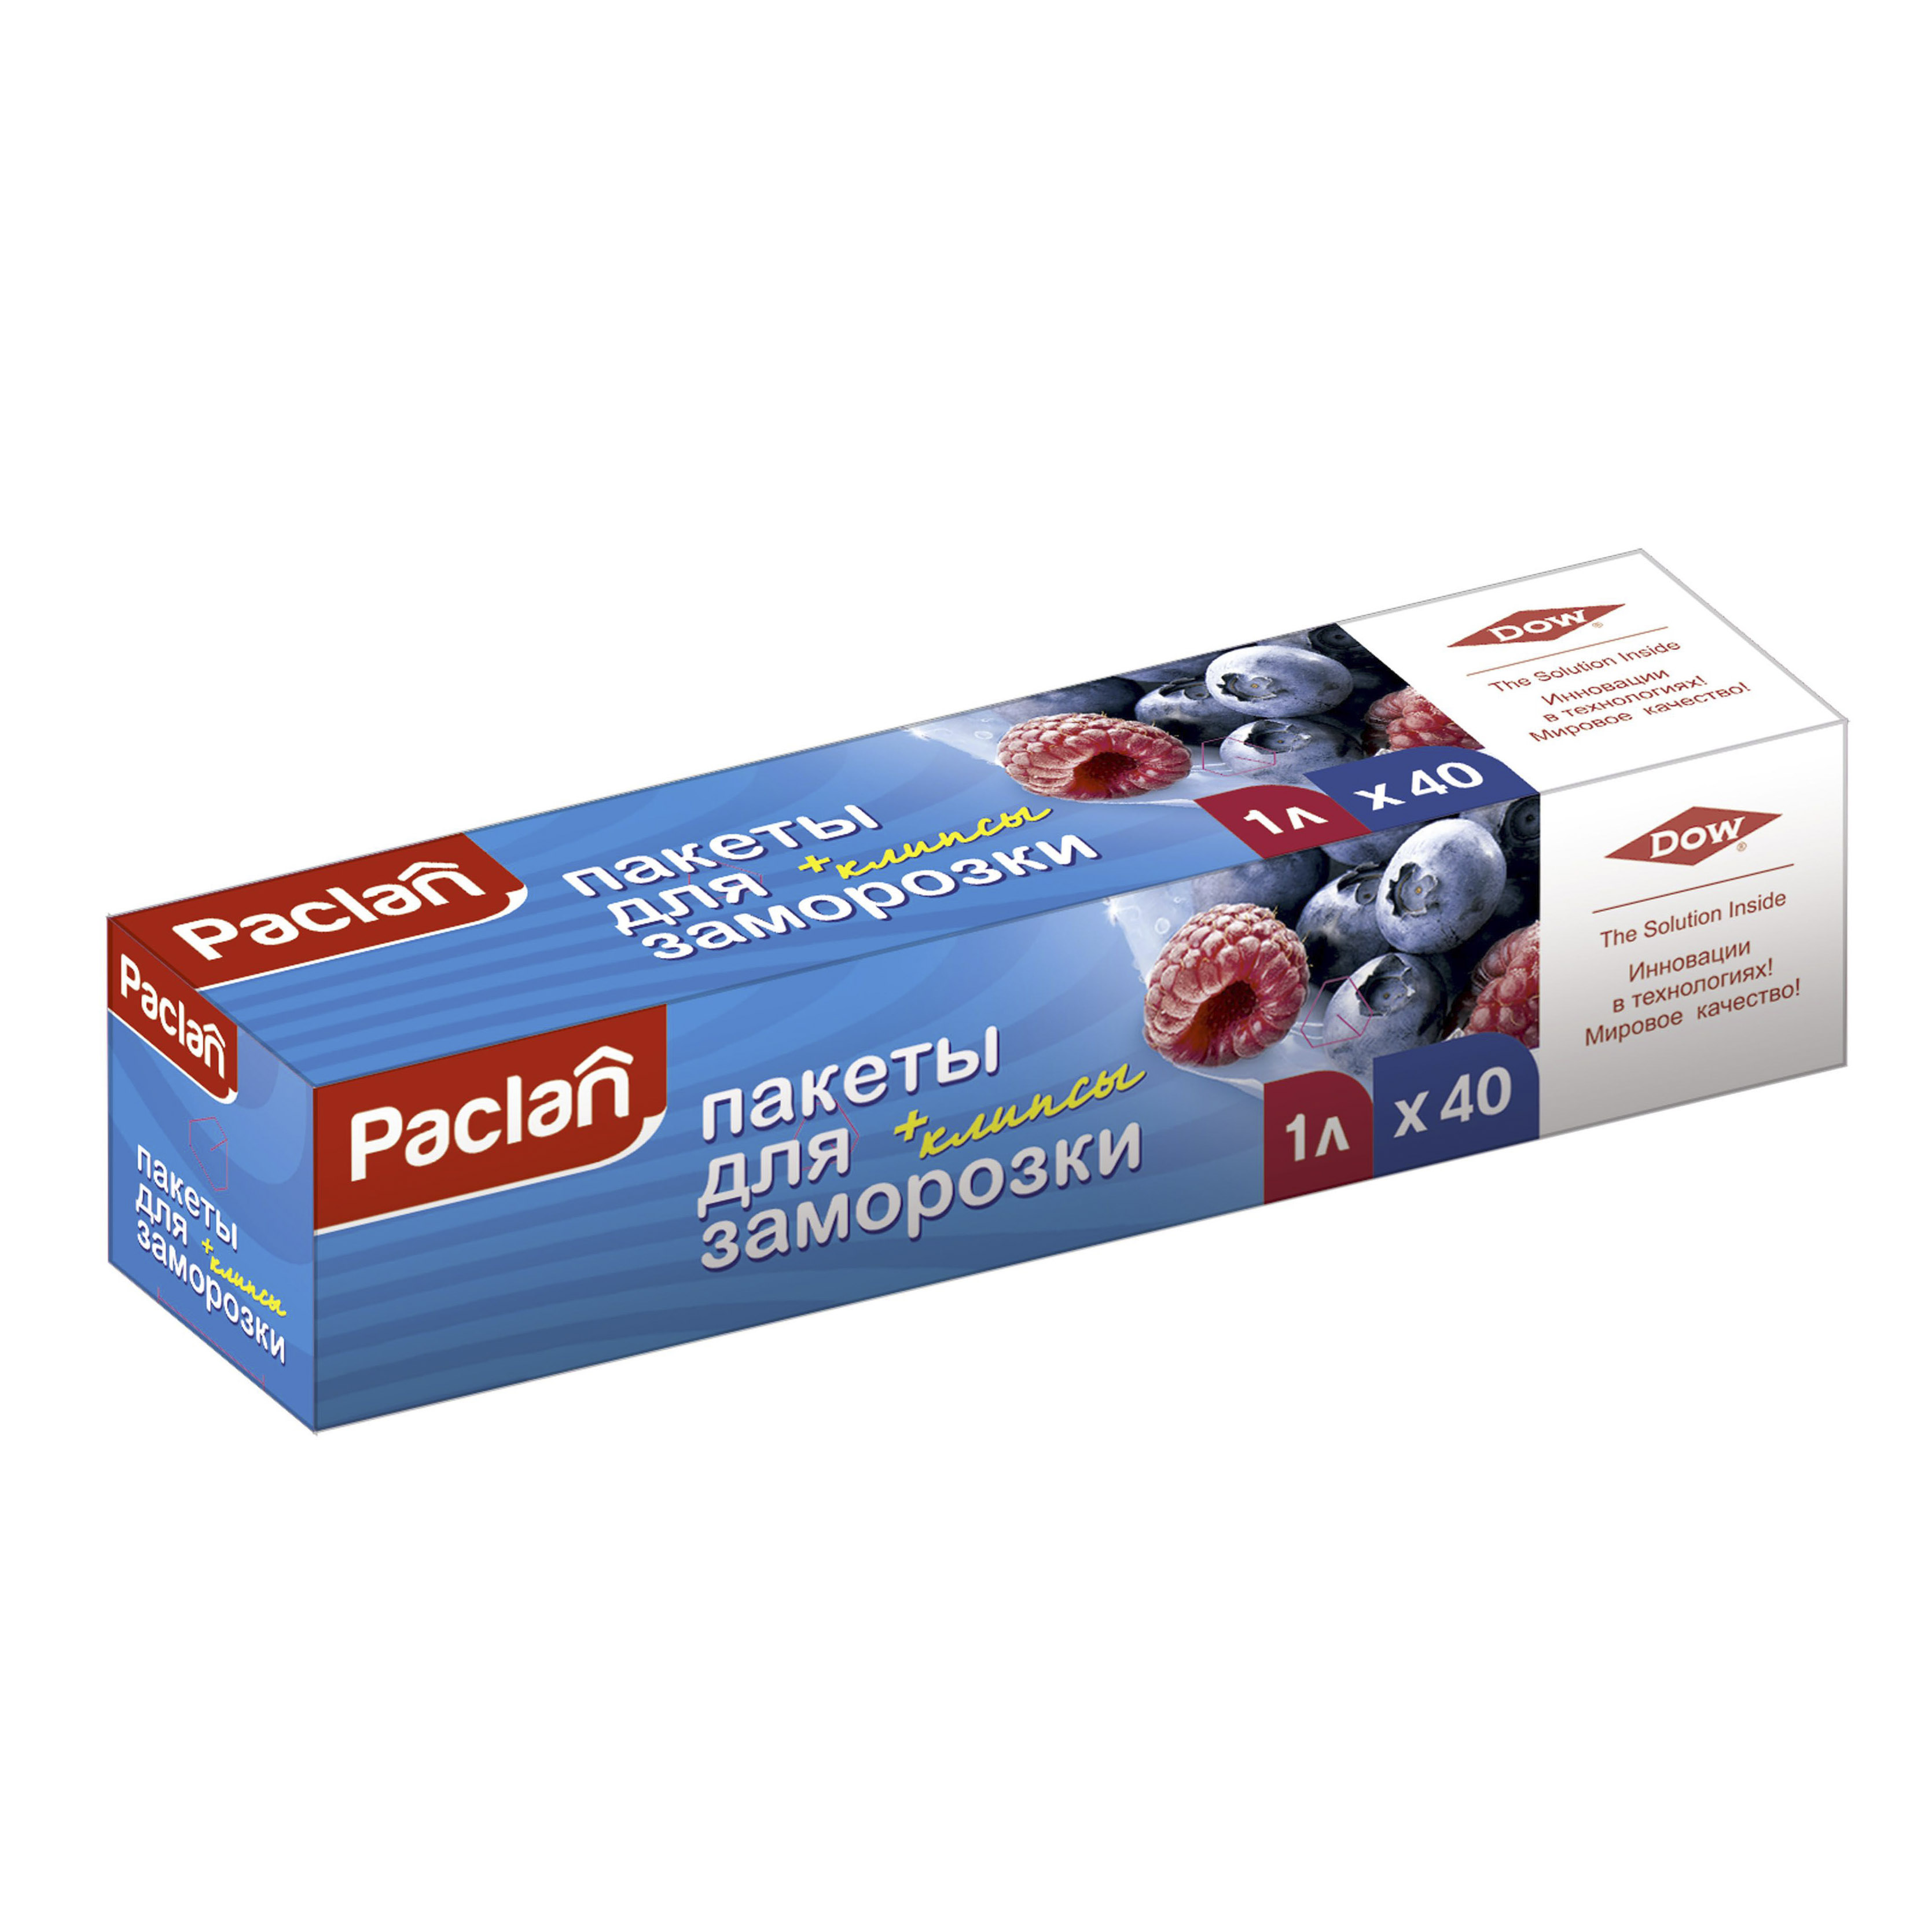 Пакеты Paclan для хранения и замораживания продуктов 1 л 40 шт paclan пакеты для замораживания 20